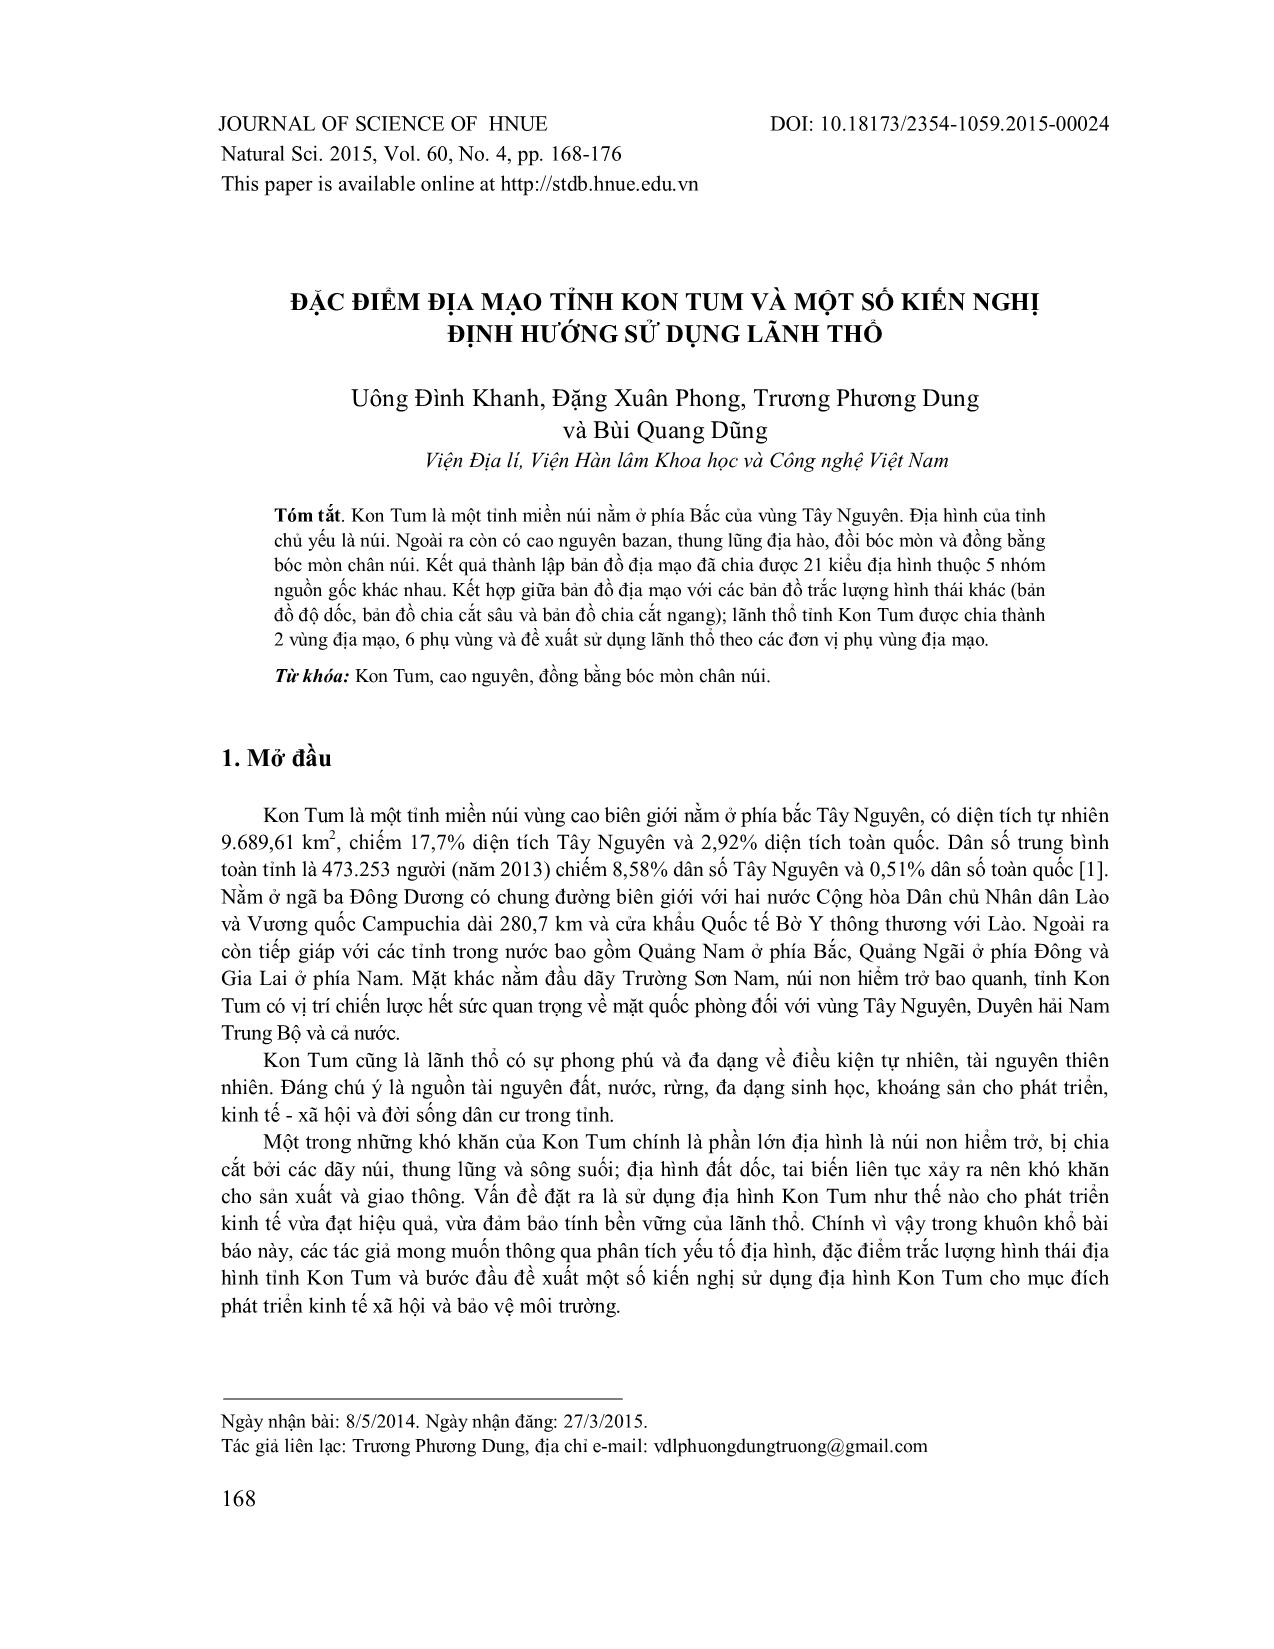 Đặc điểm địa mạo tỉnh Kon Tum và một số kiến nghị định hướng sử dụng lãnh thổ trang 1